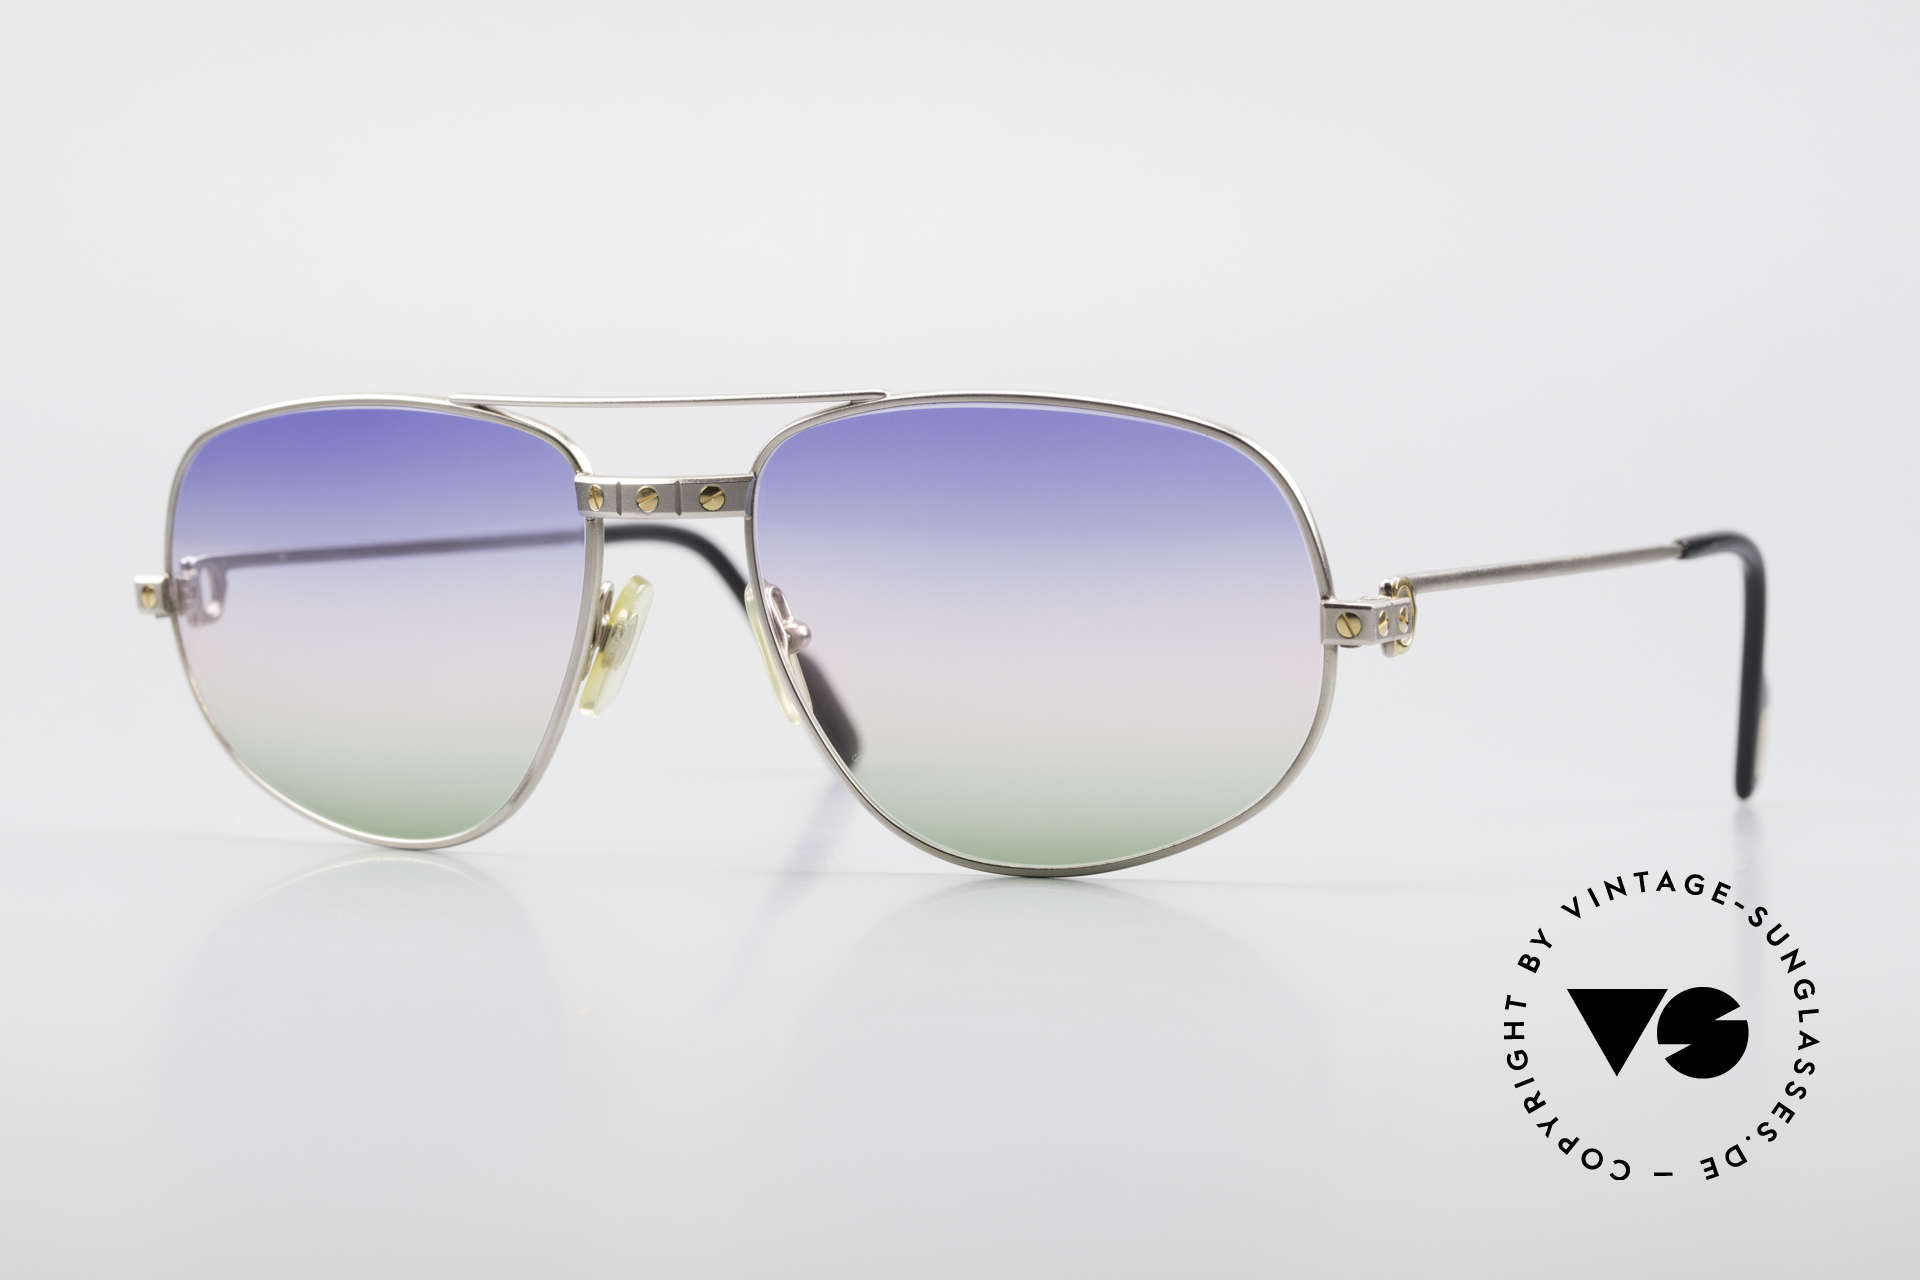 Sunglasses Cartier Romance Santos - L 